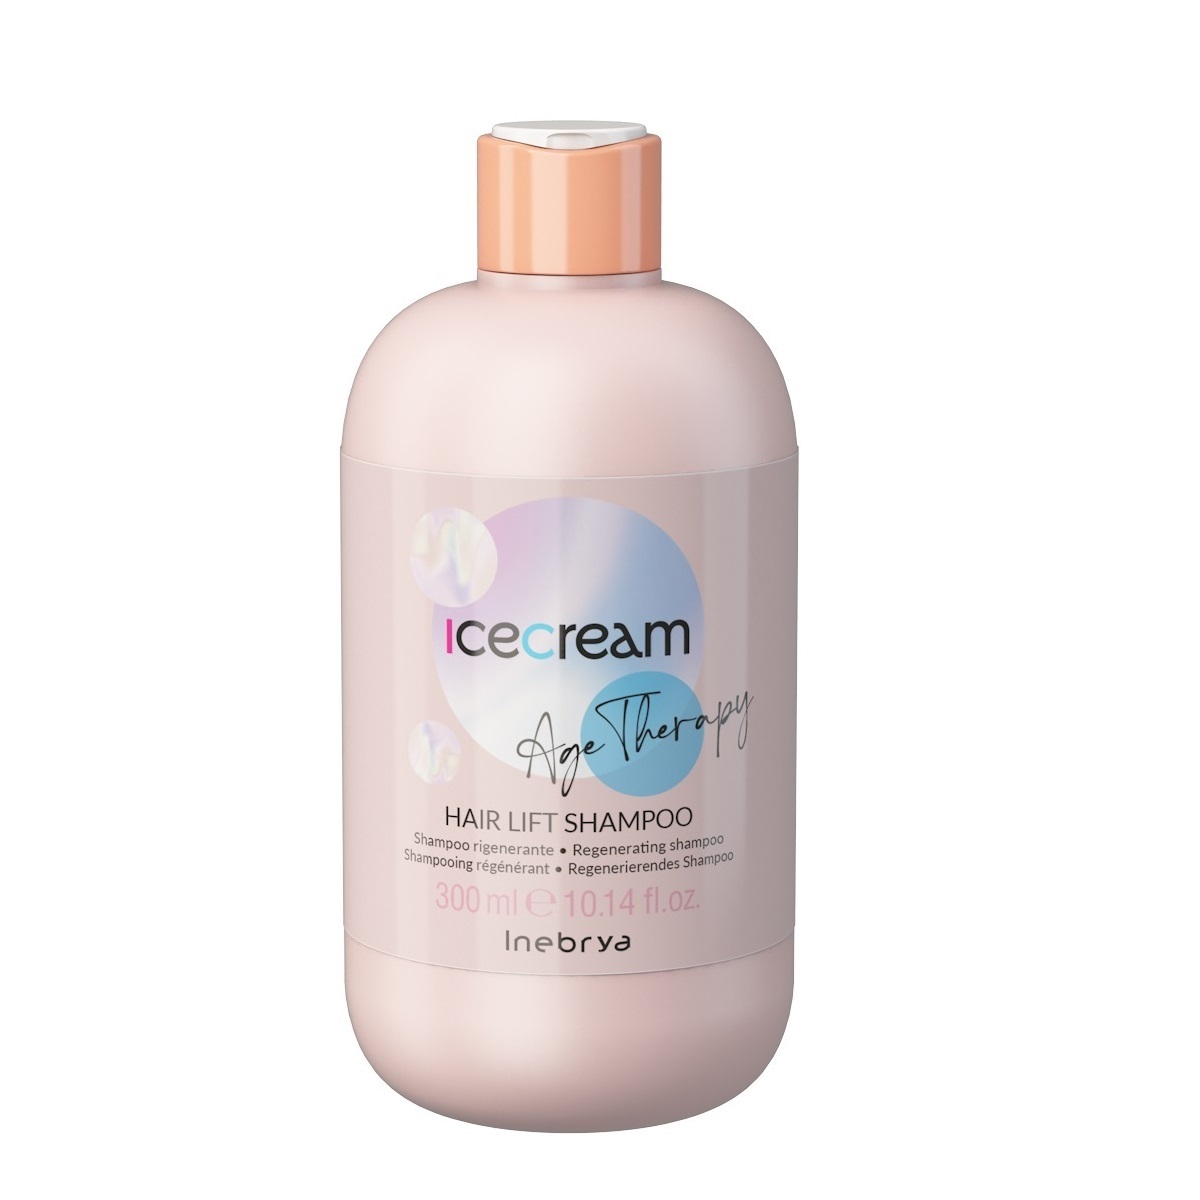 Inebrya Ice Cream Age Therapy - Regeneračný šampón na vlasy, 300ml